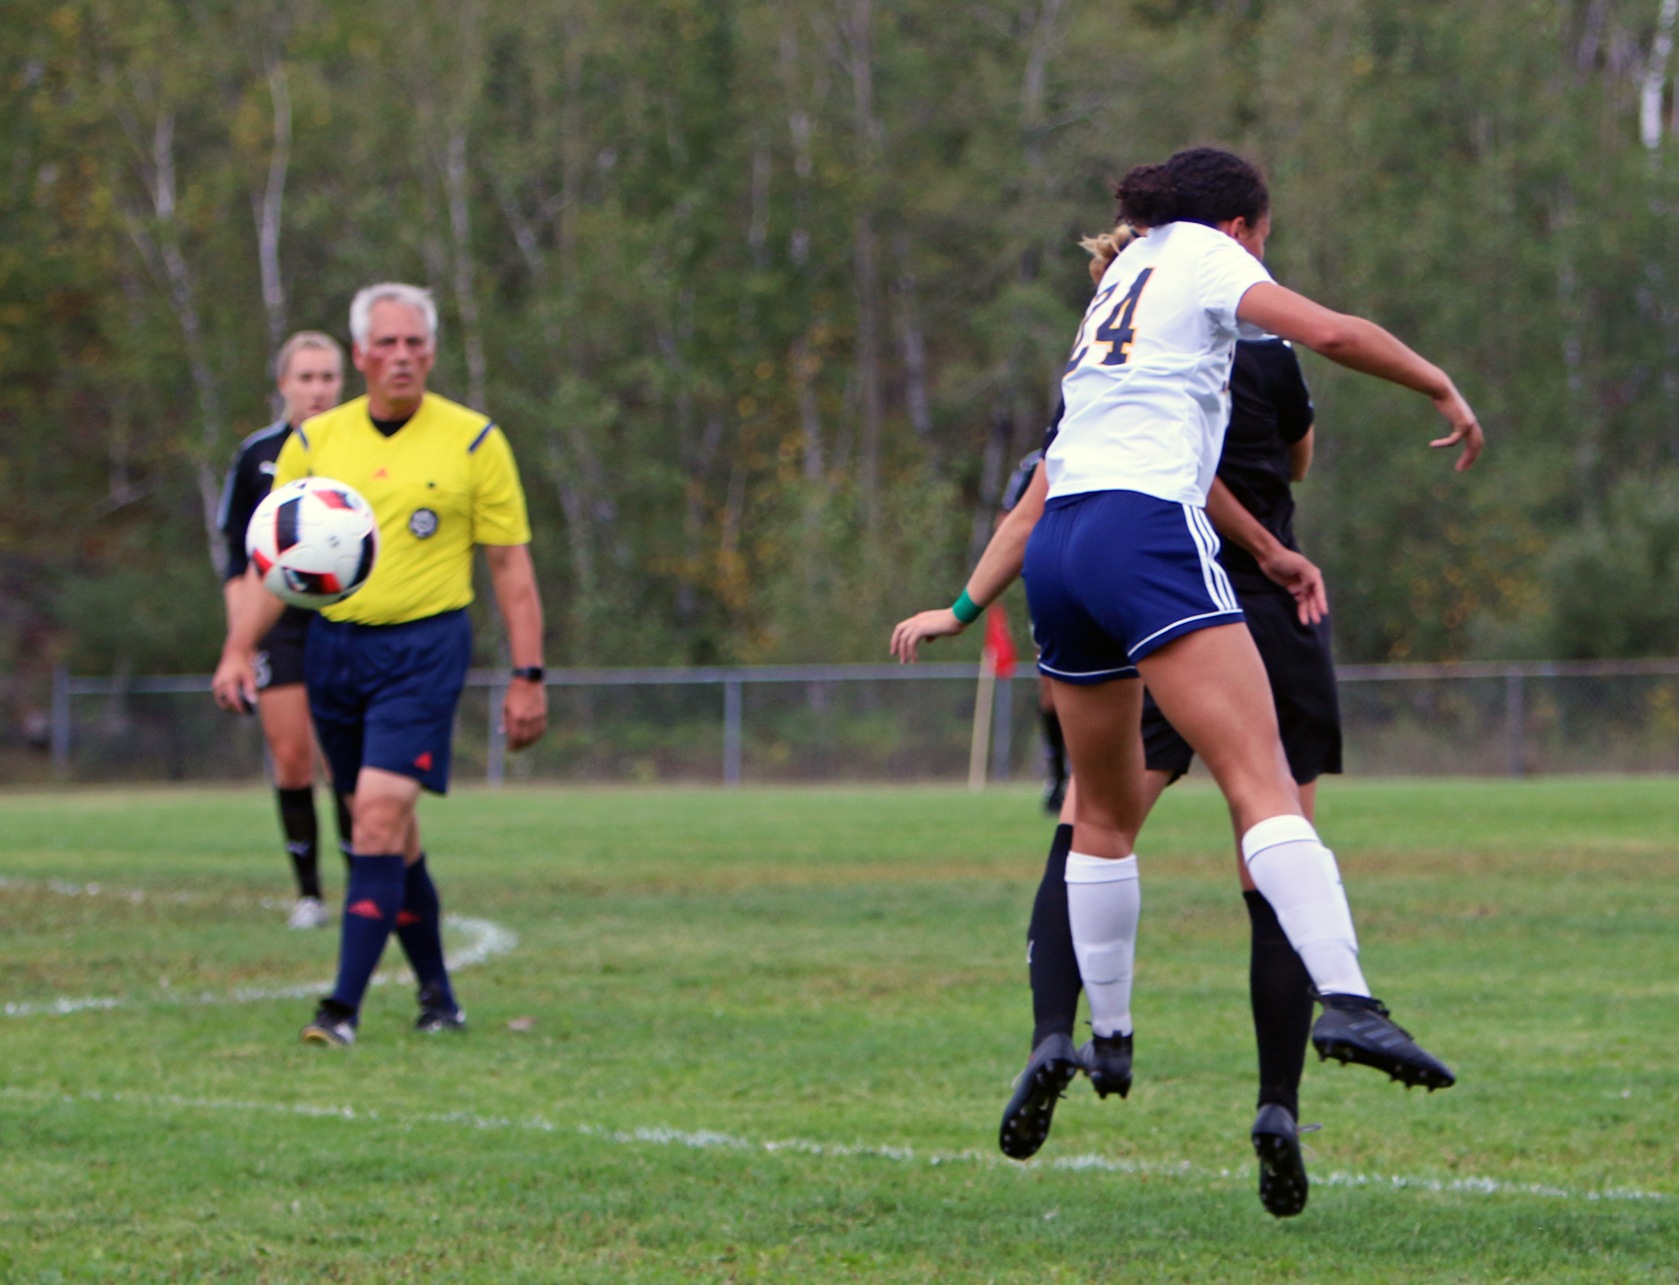 Soccer Féminin / Début de match solide des Gaels insurmontable pour les Voyageurs.